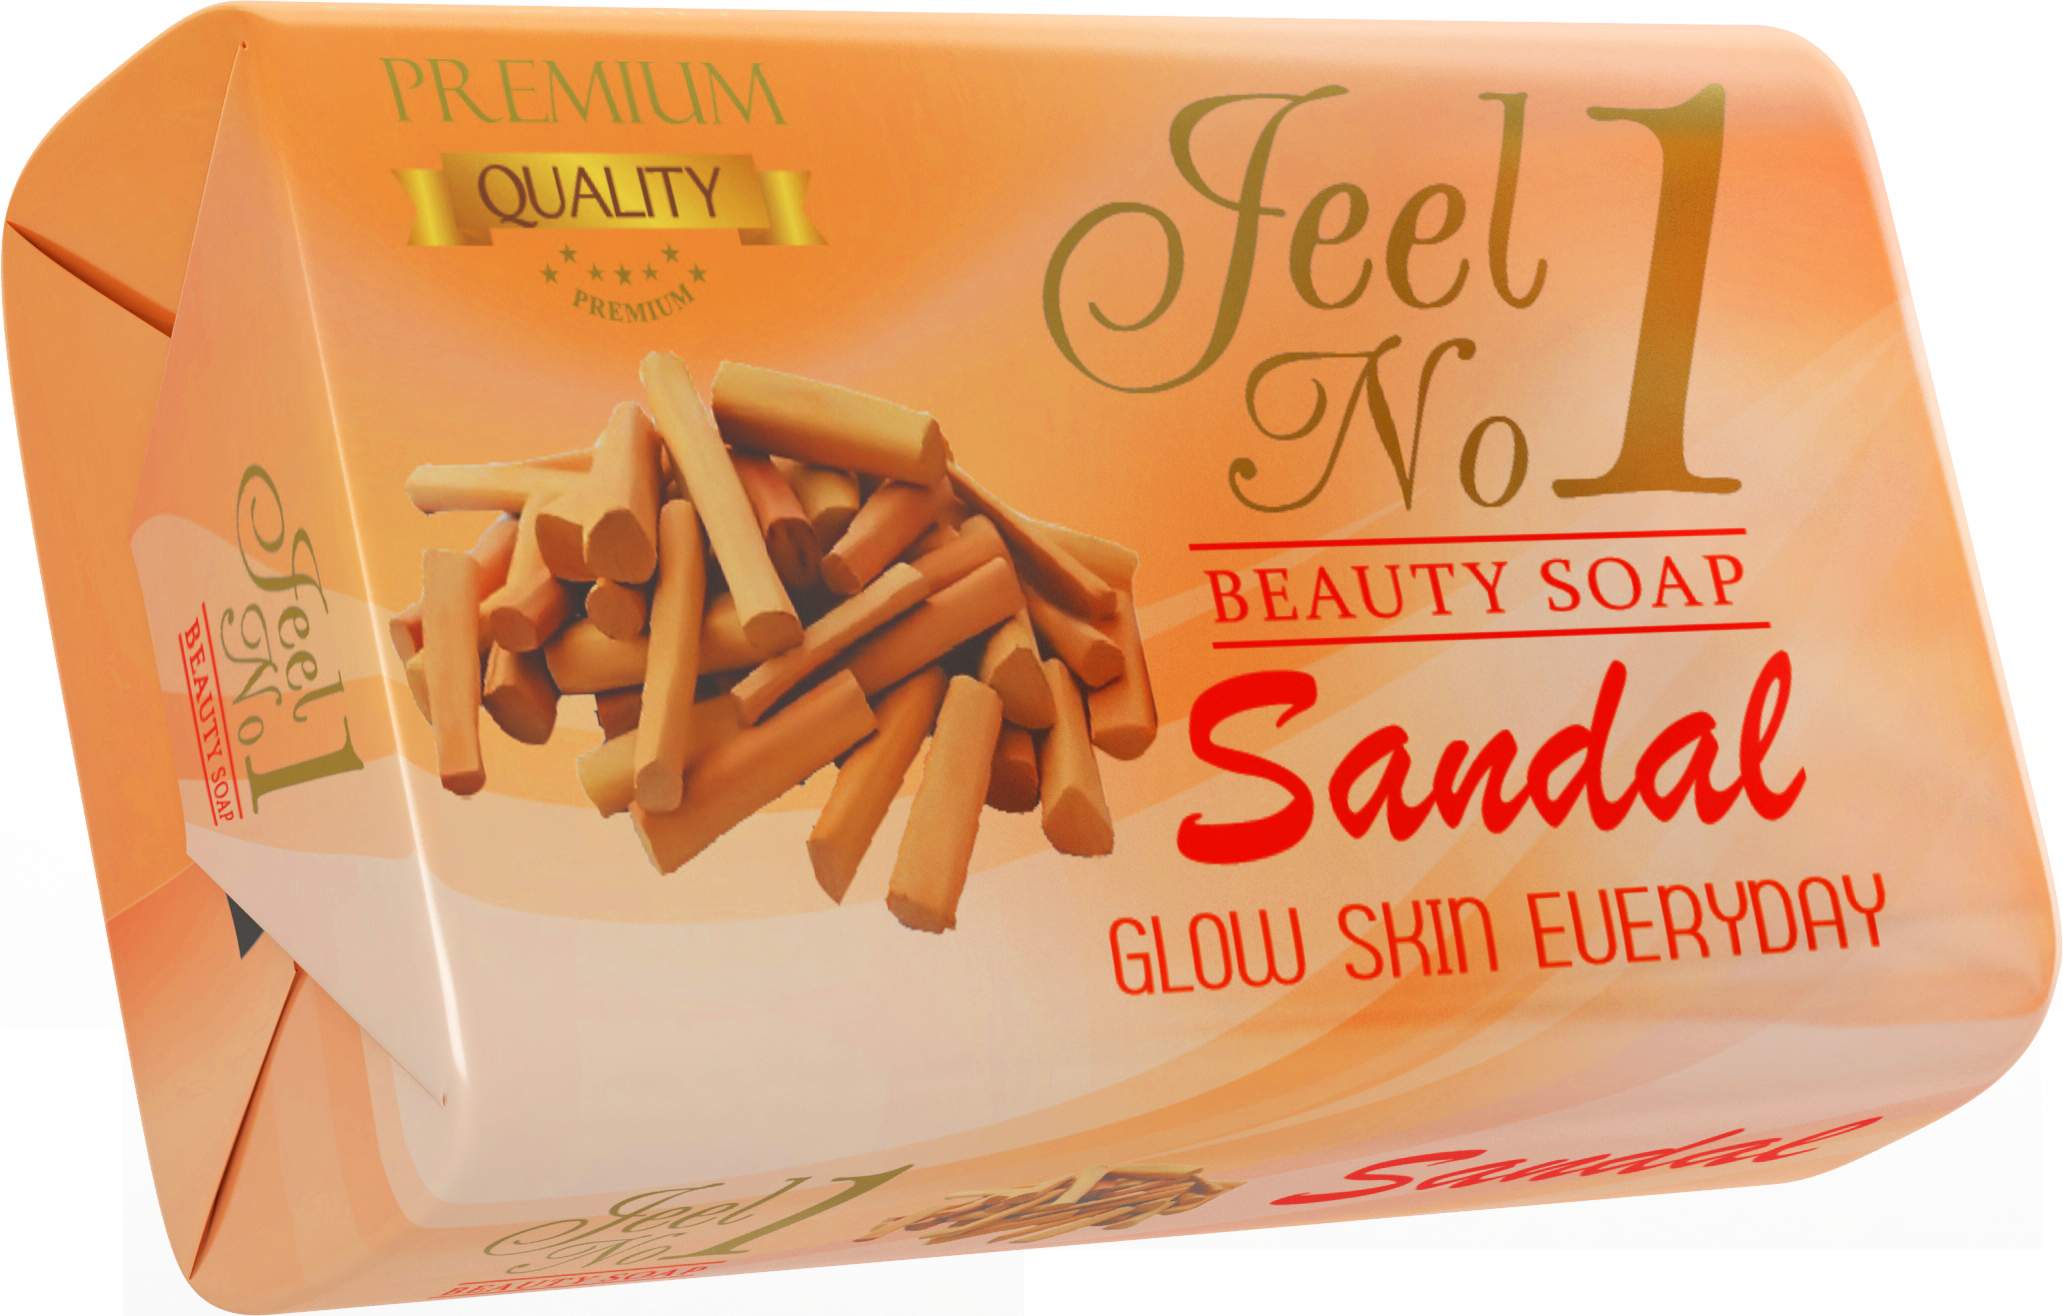 Jeel N0.1 Sandal Beauty Soap